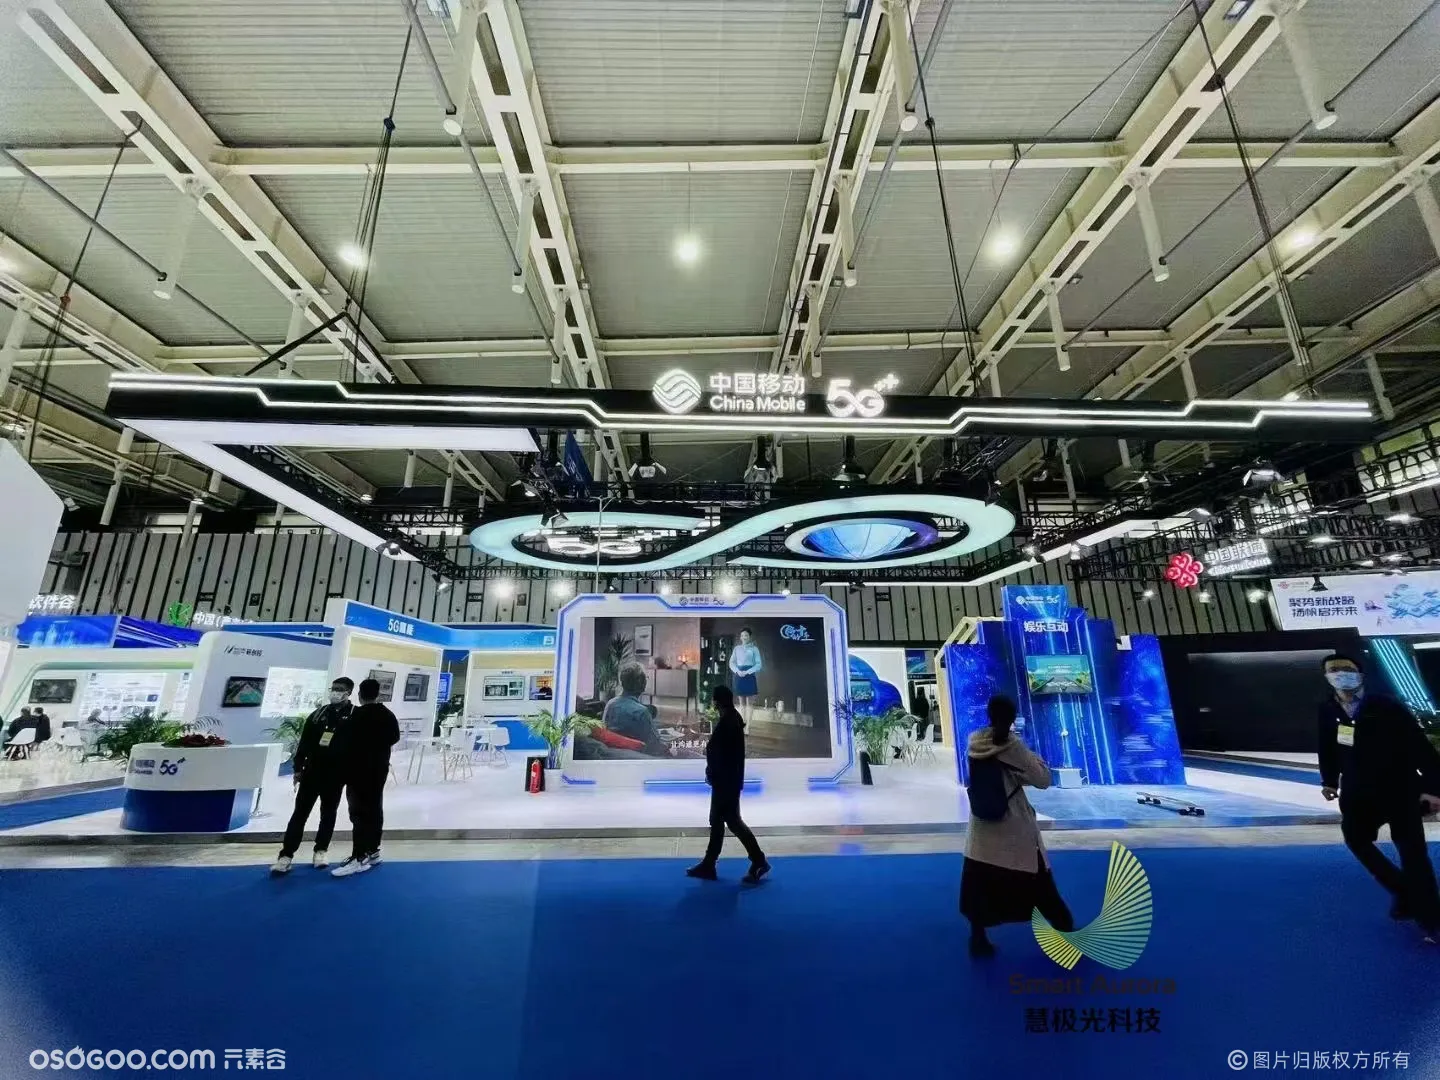 2022南京软博会中国移动体感互动滑板装置游戏案例分享